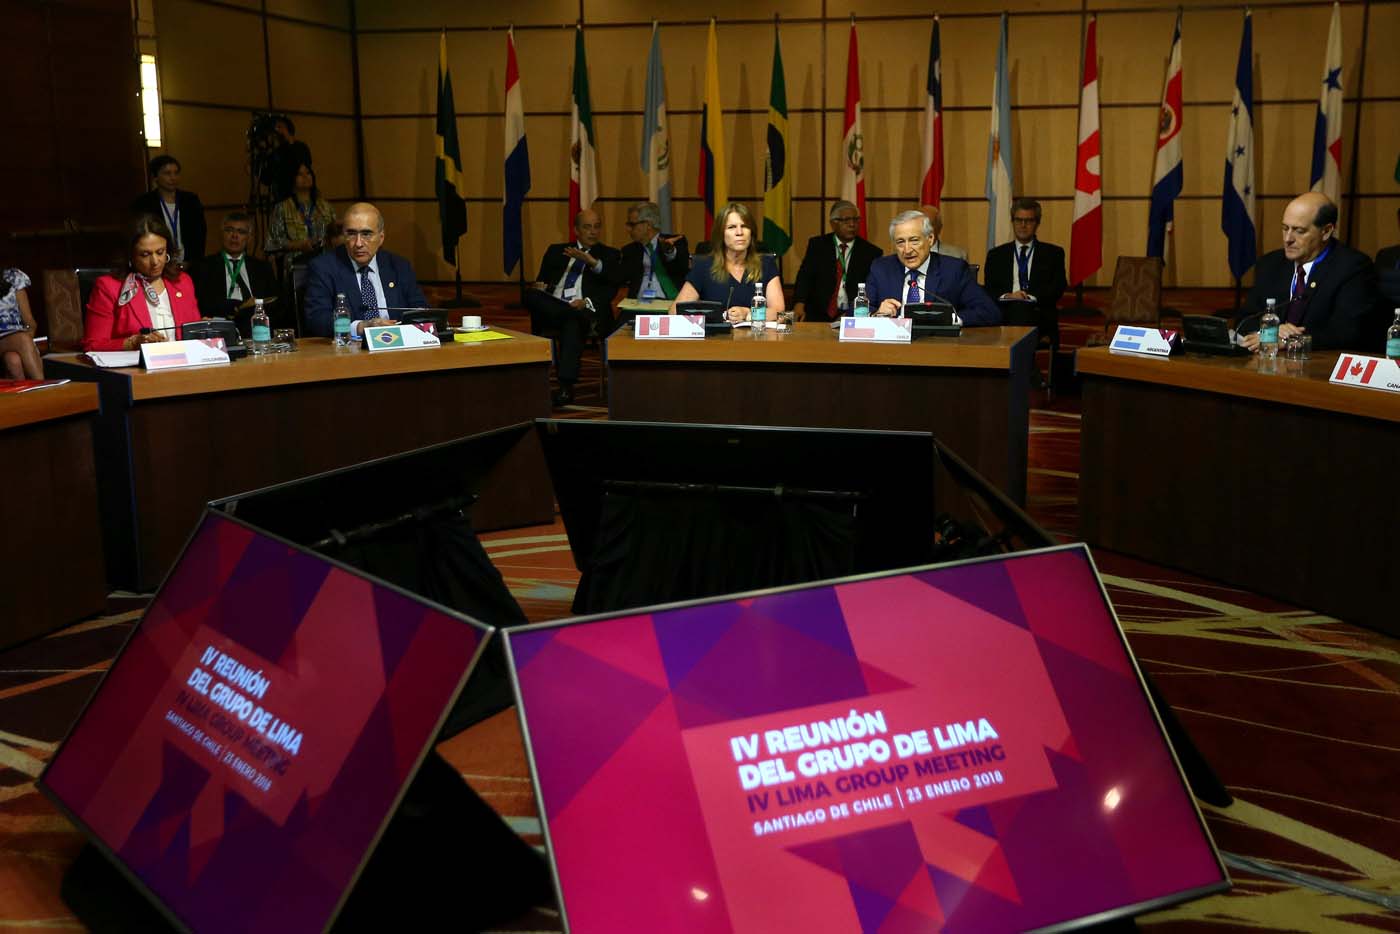 Grupo de Lima convoca reunión para el 13 de febrero ante convocatoria de presidenciales en Venezuela